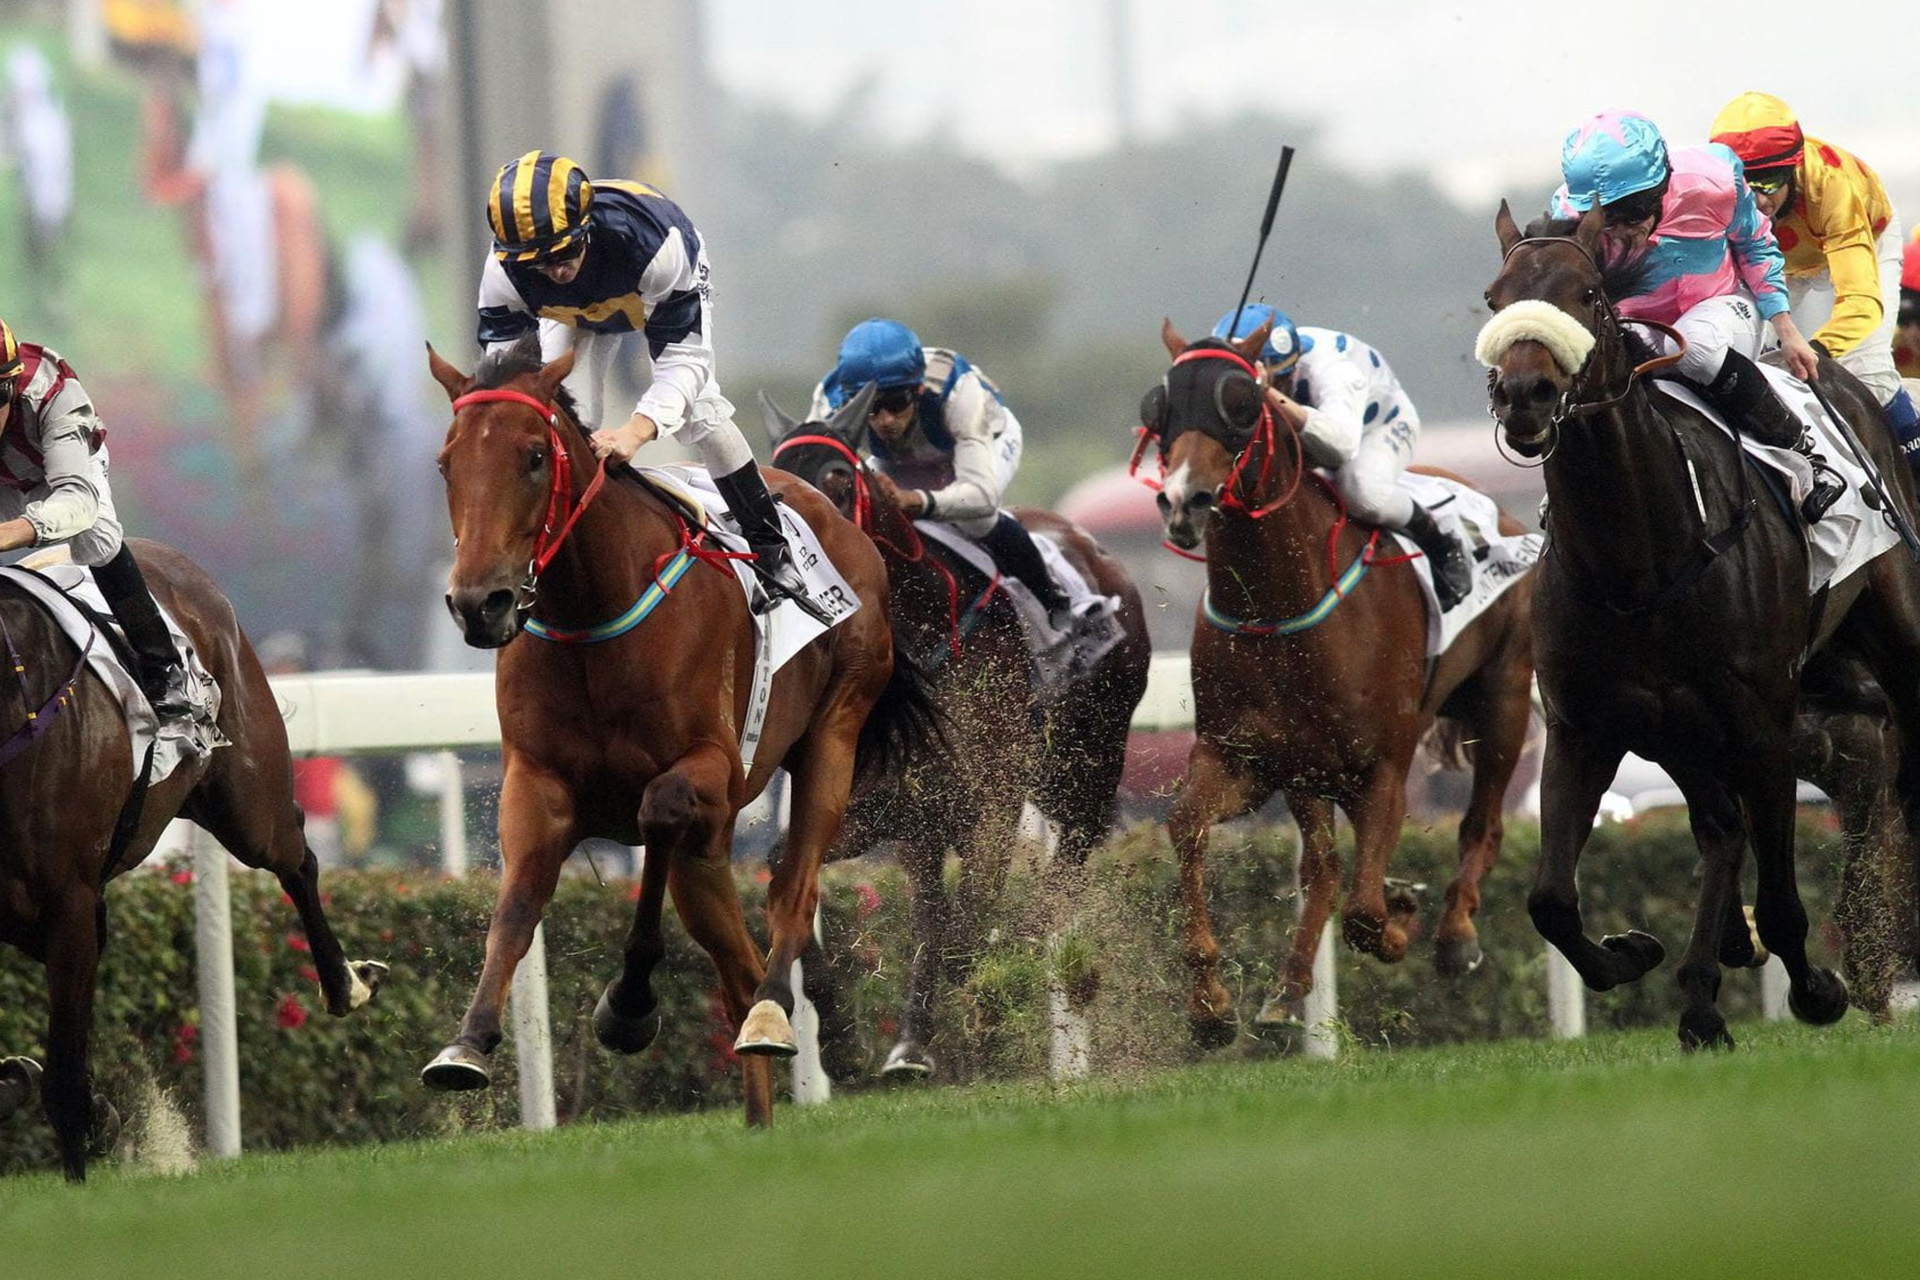 Horses and jockeys racing at the grand national